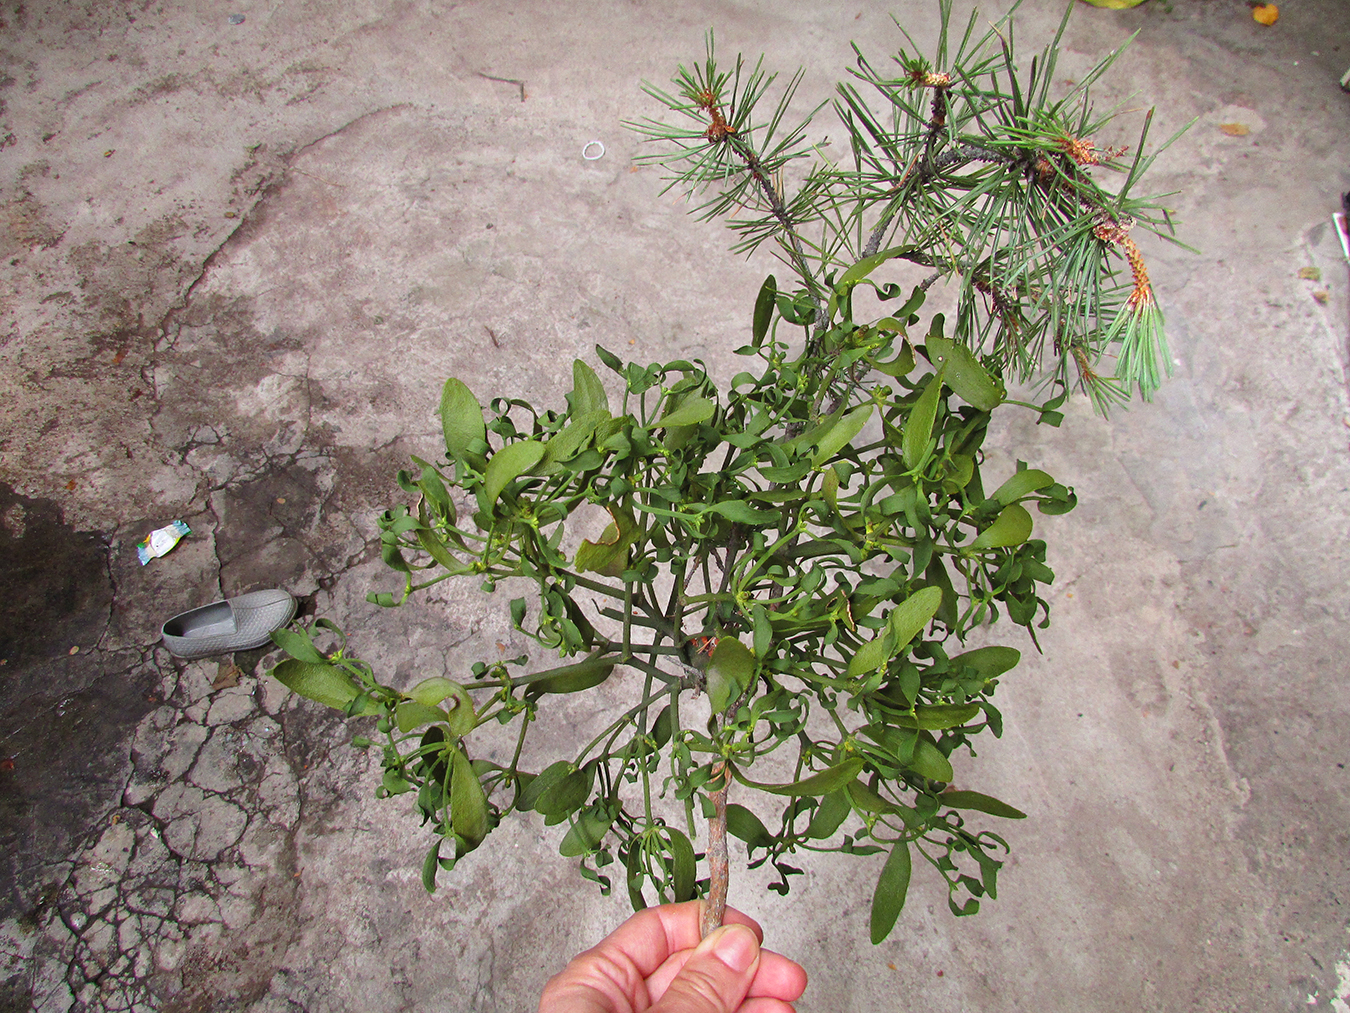 Çakum (mistletoe) collected from Göcek’s uplands. Photo by Ekin Kurtiç.